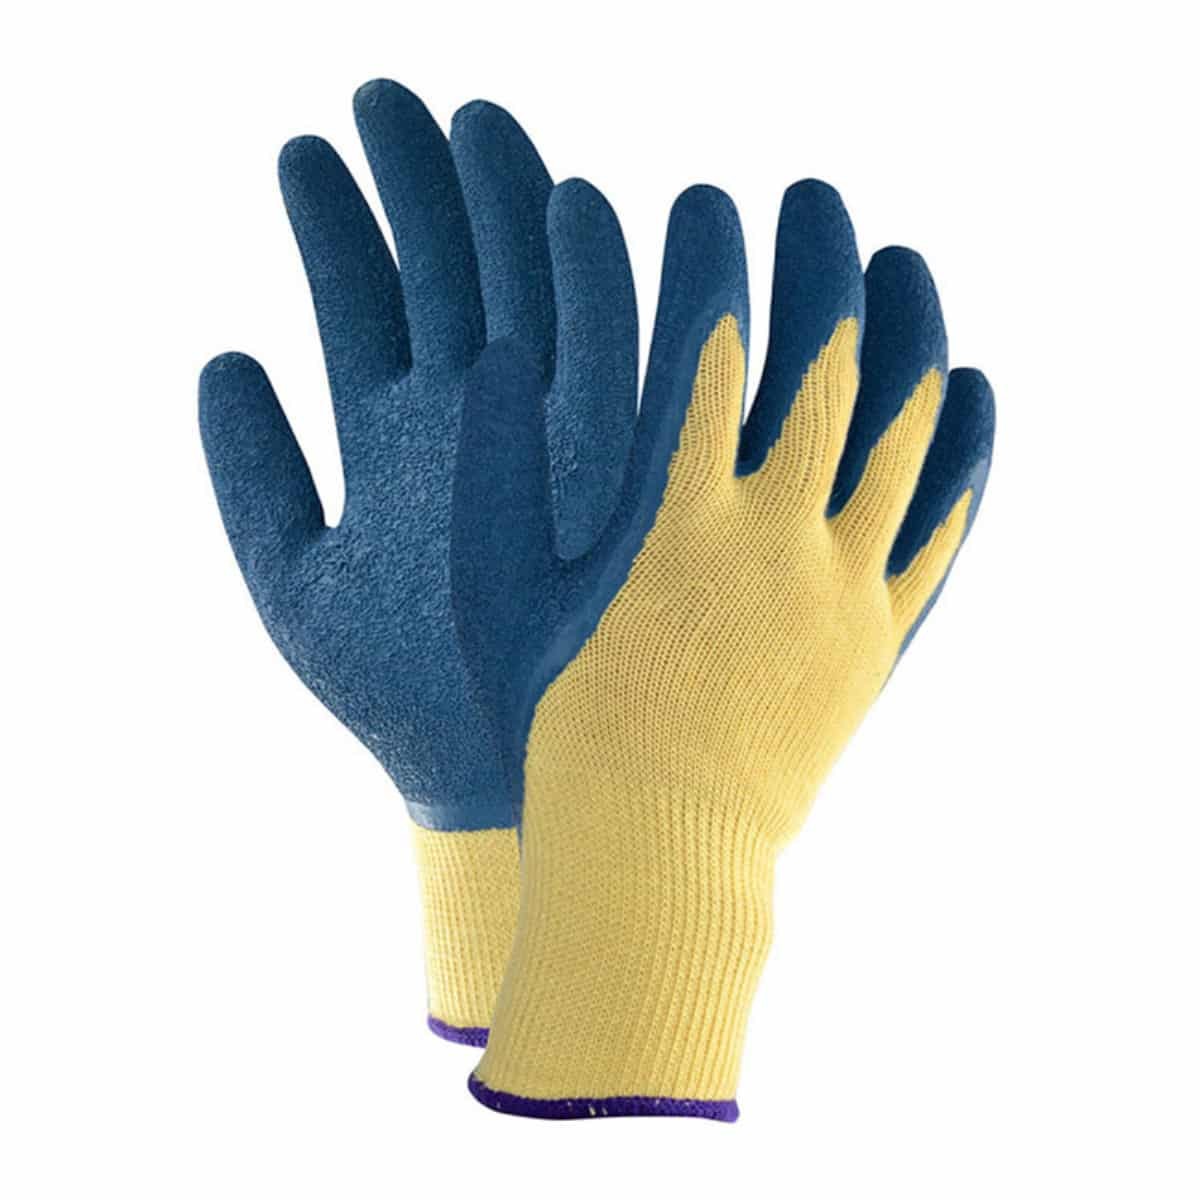 ဆောက်လုပ်ရေး Hand Protective 10 Gauge Polyester အပြာရောင် Latex Crinkle Palm Coated လက်အိတ်